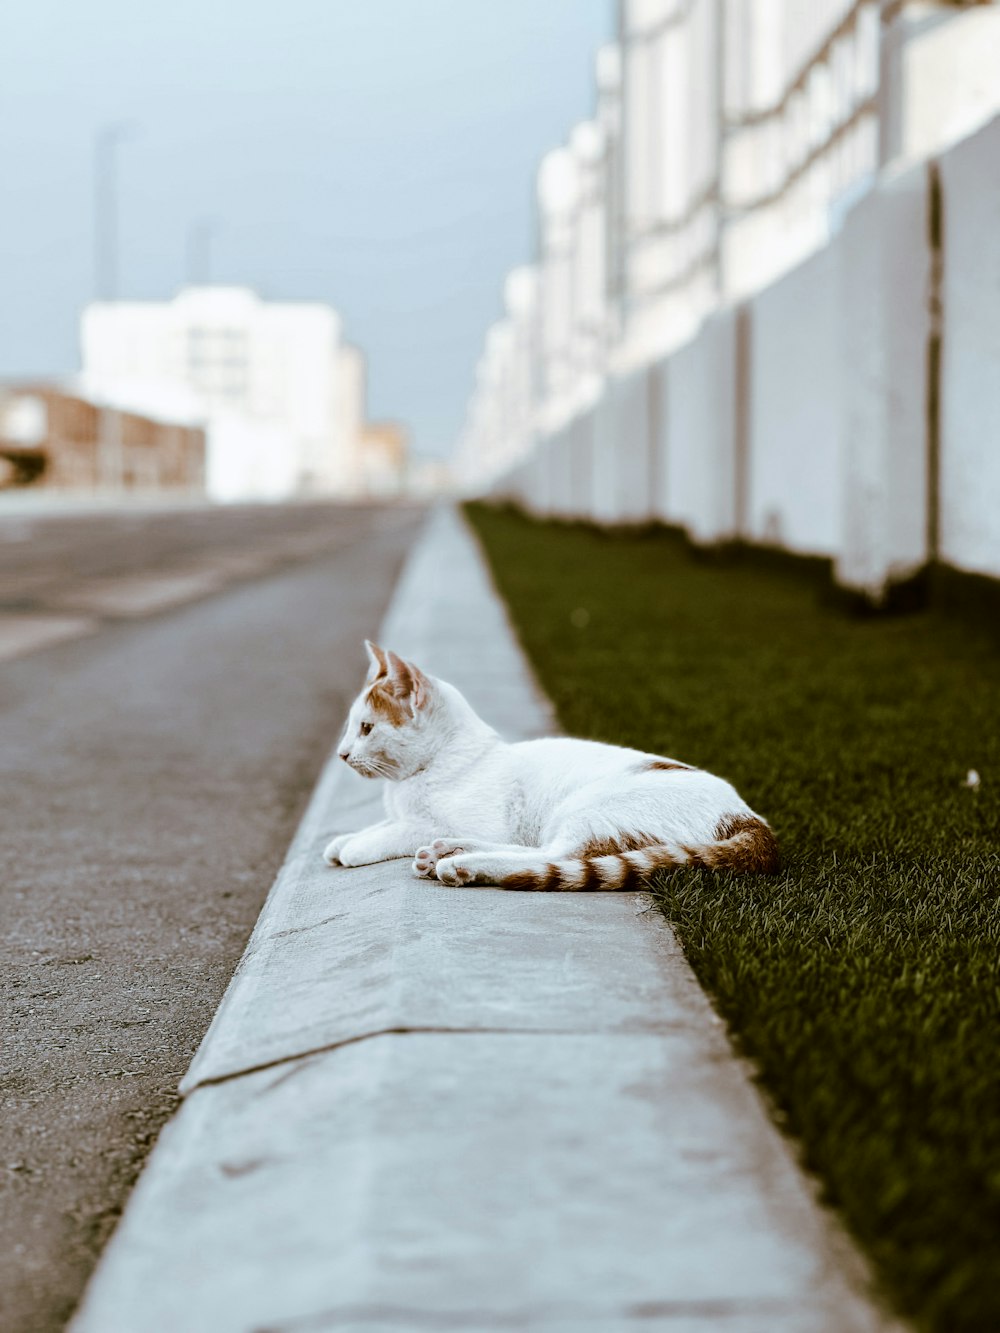 歩道に横たわる猫